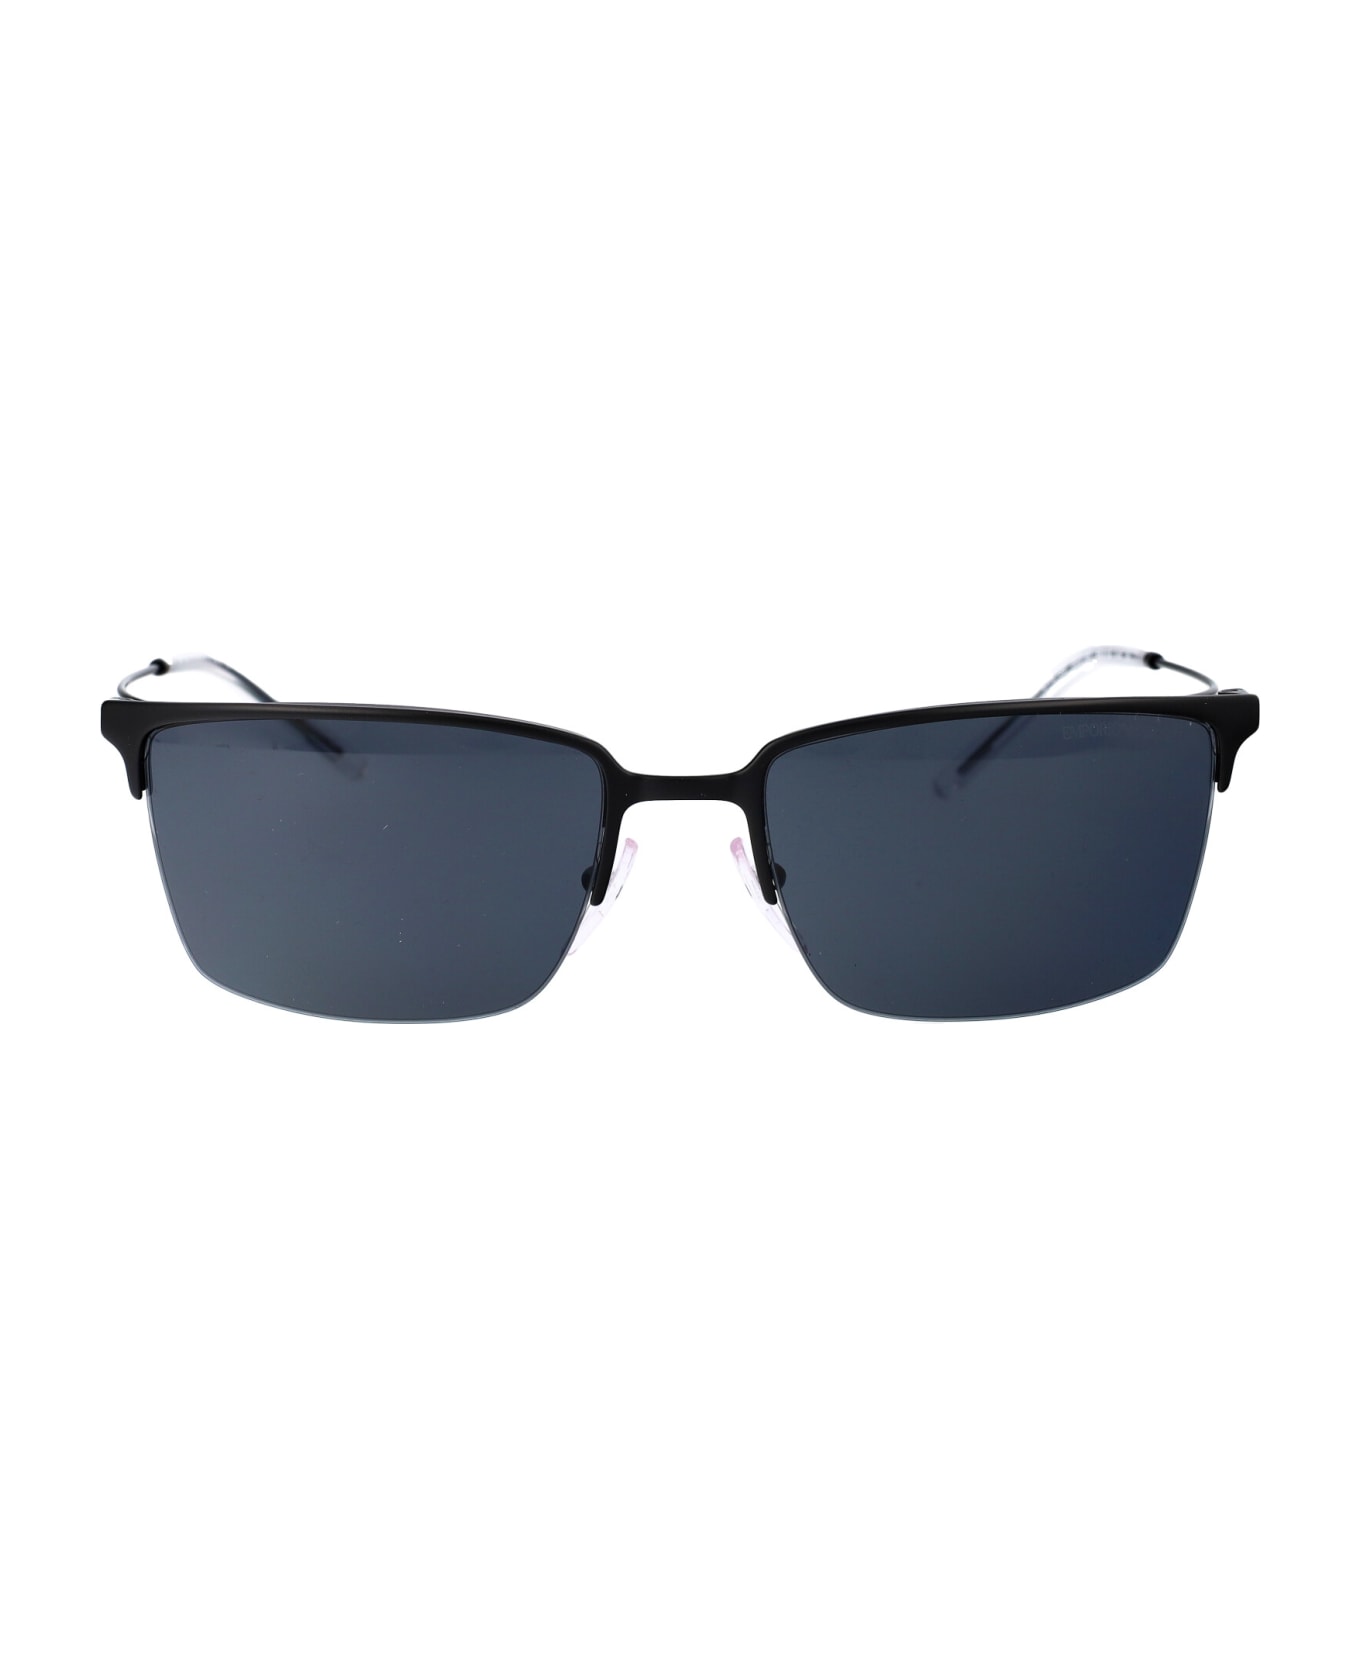 Emporio Armani 0ea2155 Sunglasses - 300187 MATTE BLACK サングラス